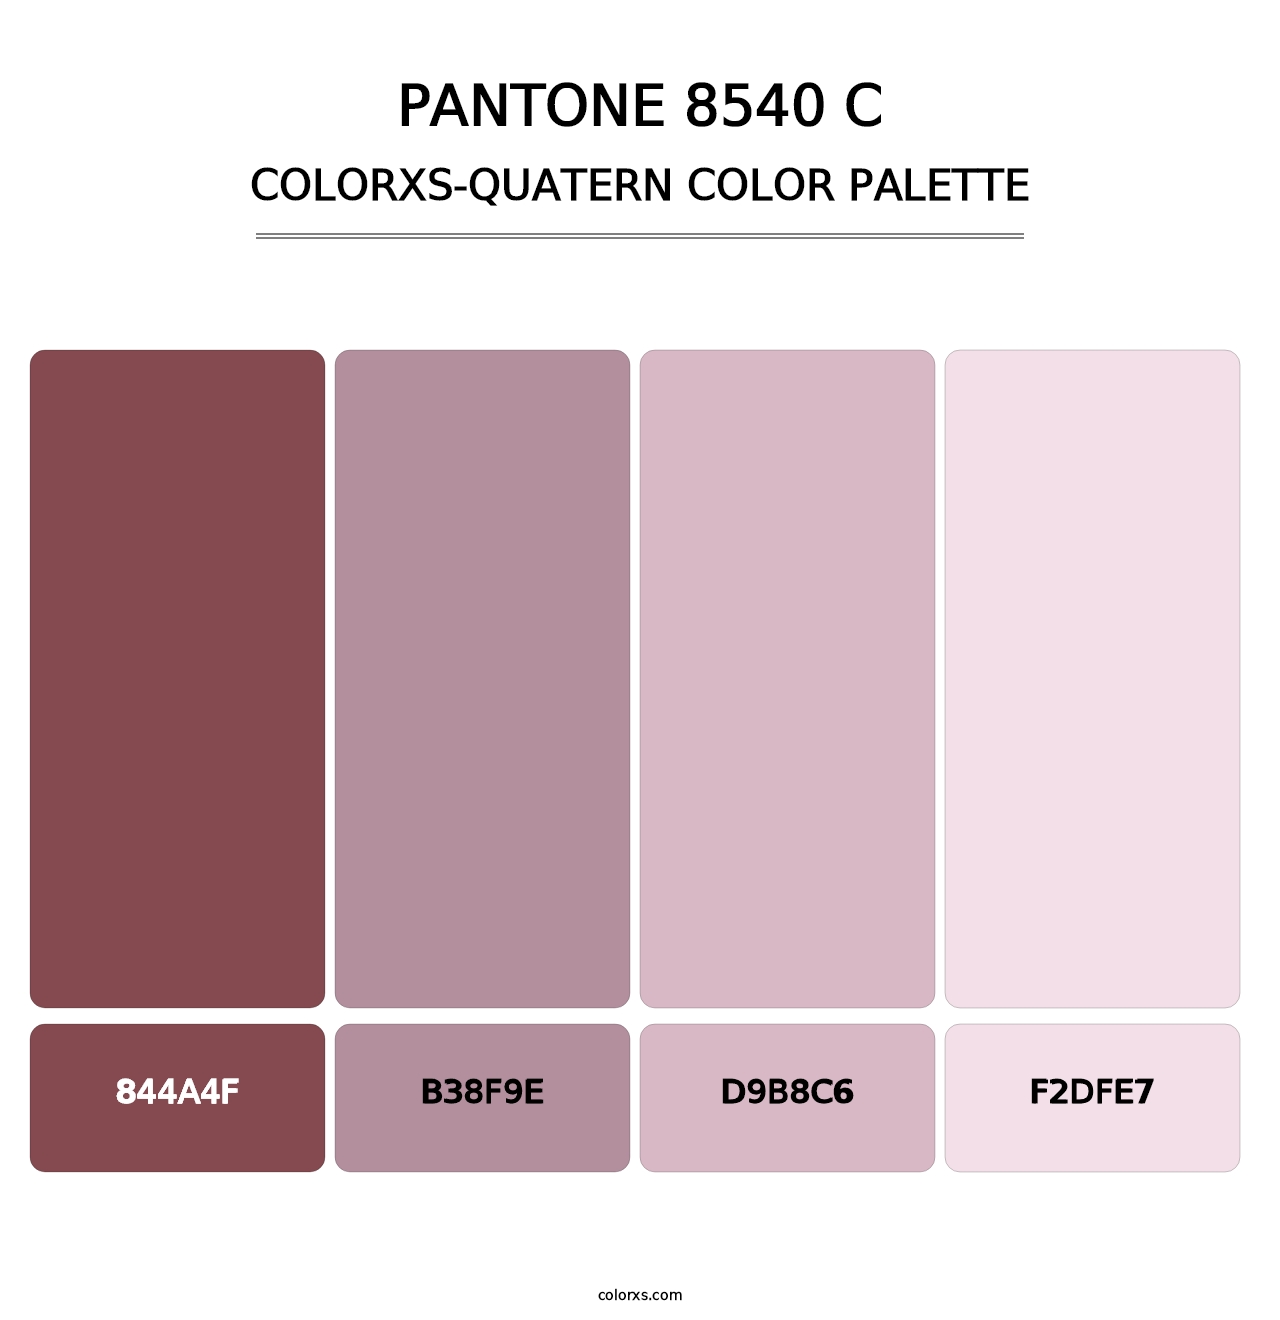 PANTONE 8540 C - Colorxs Quatern Palette